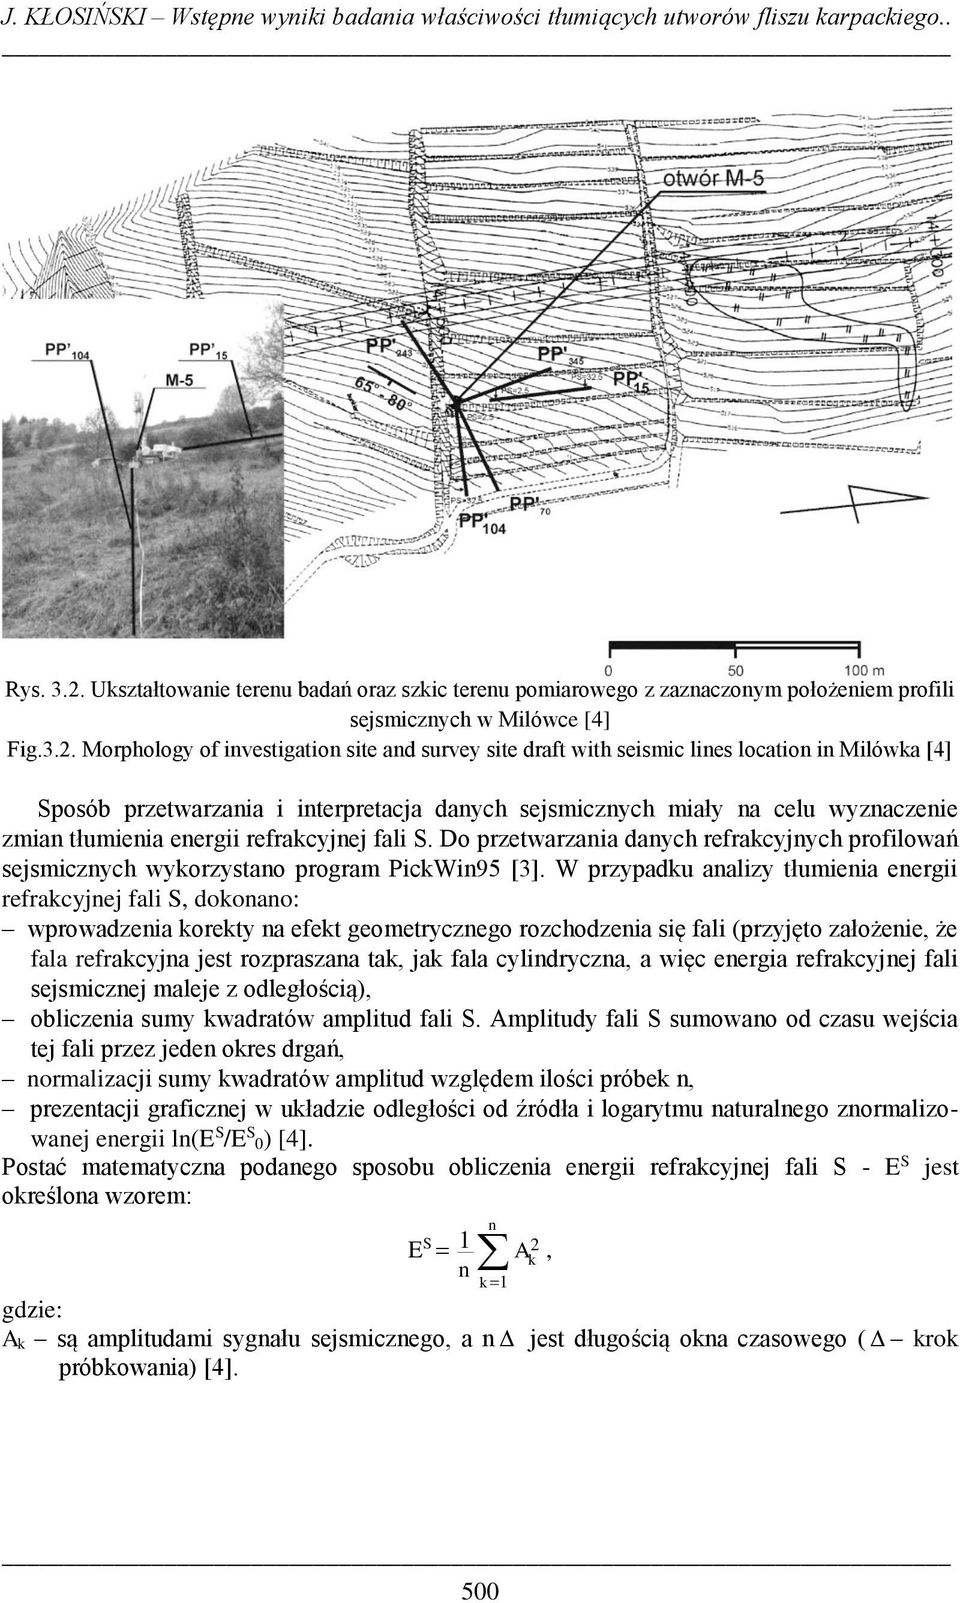 Morphology of investigation site and survey site draft with seismic lines location in Milówka [4] Sposób przetwarzania i interpretacja danych sejsmicznych miały na celu wyznaczenie zmian tłumienia